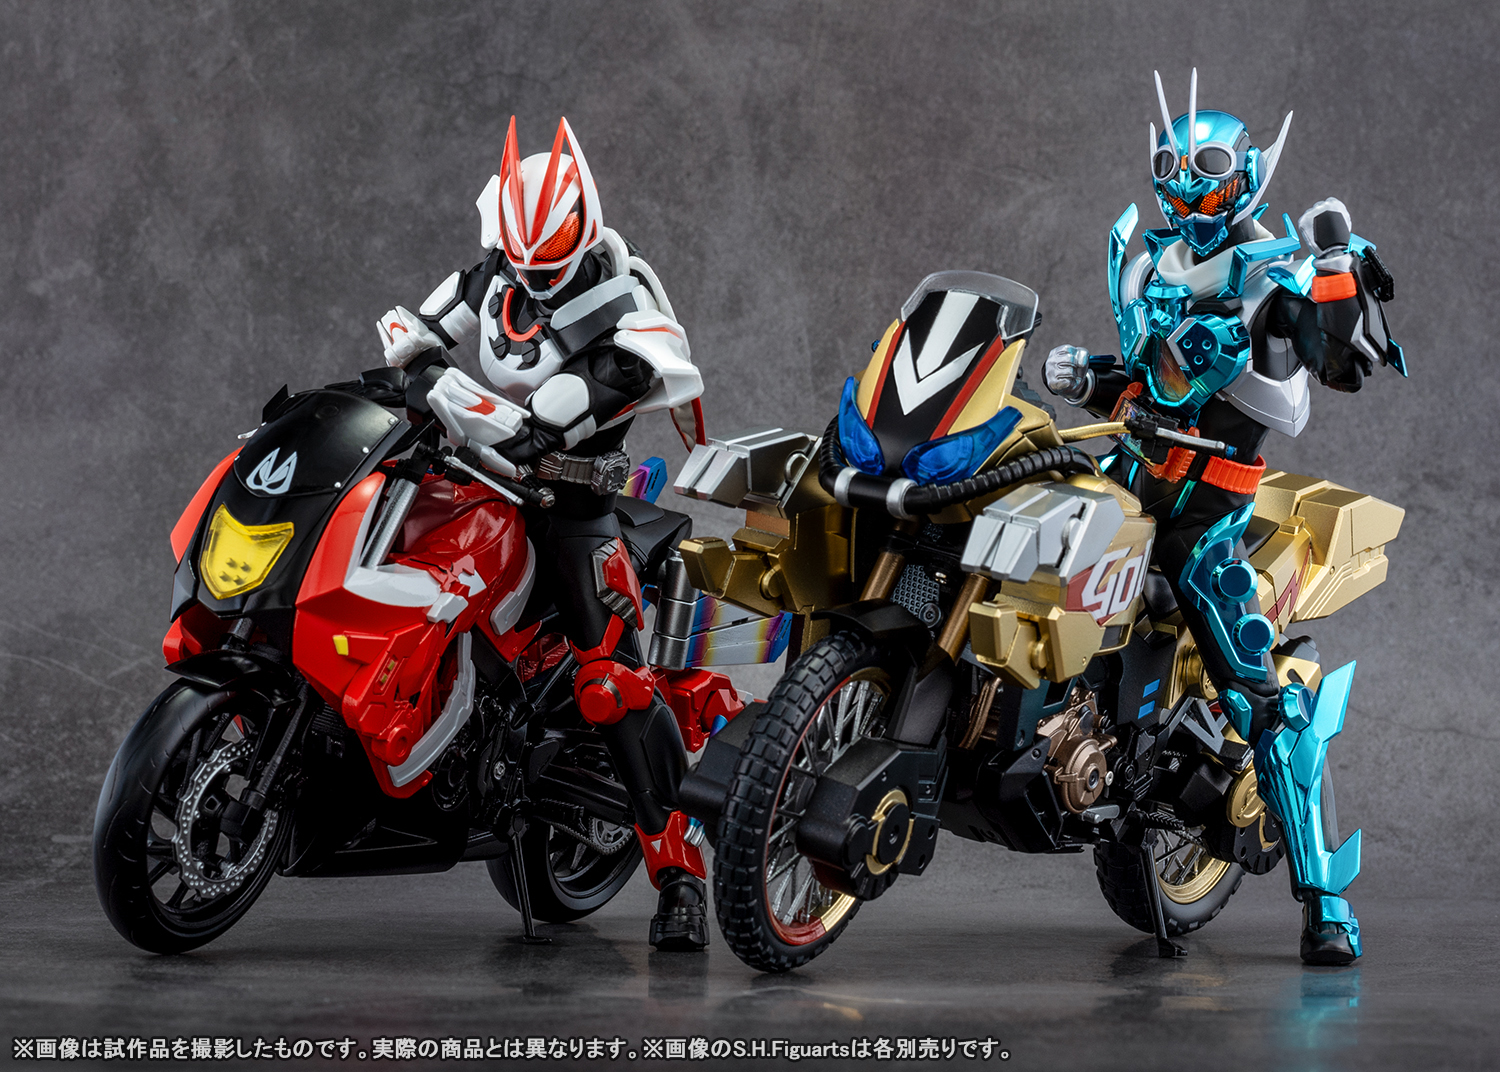 ¡Intensos planos de las máquinas de las dos últimas películas de la serie Kamen Rider! Tamashii web shop Por encargo S.H.Figuarts" GOLDDASH" y "BOOSTRIKER" Introducción de las nuevas tomas.